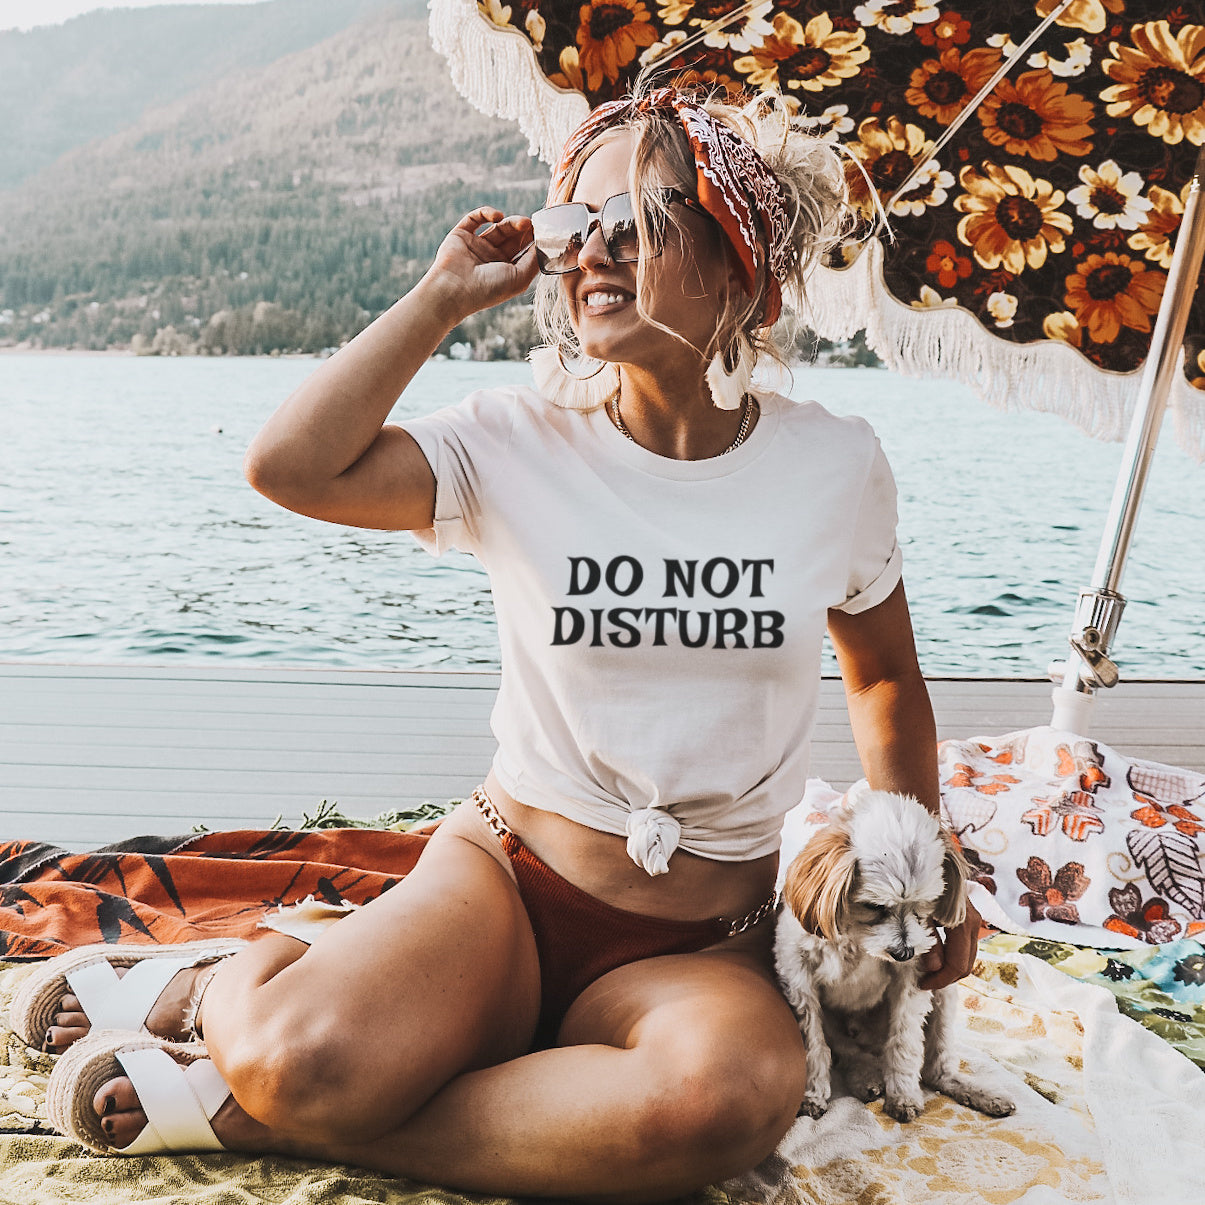 Do Not Disturb T-Shirt